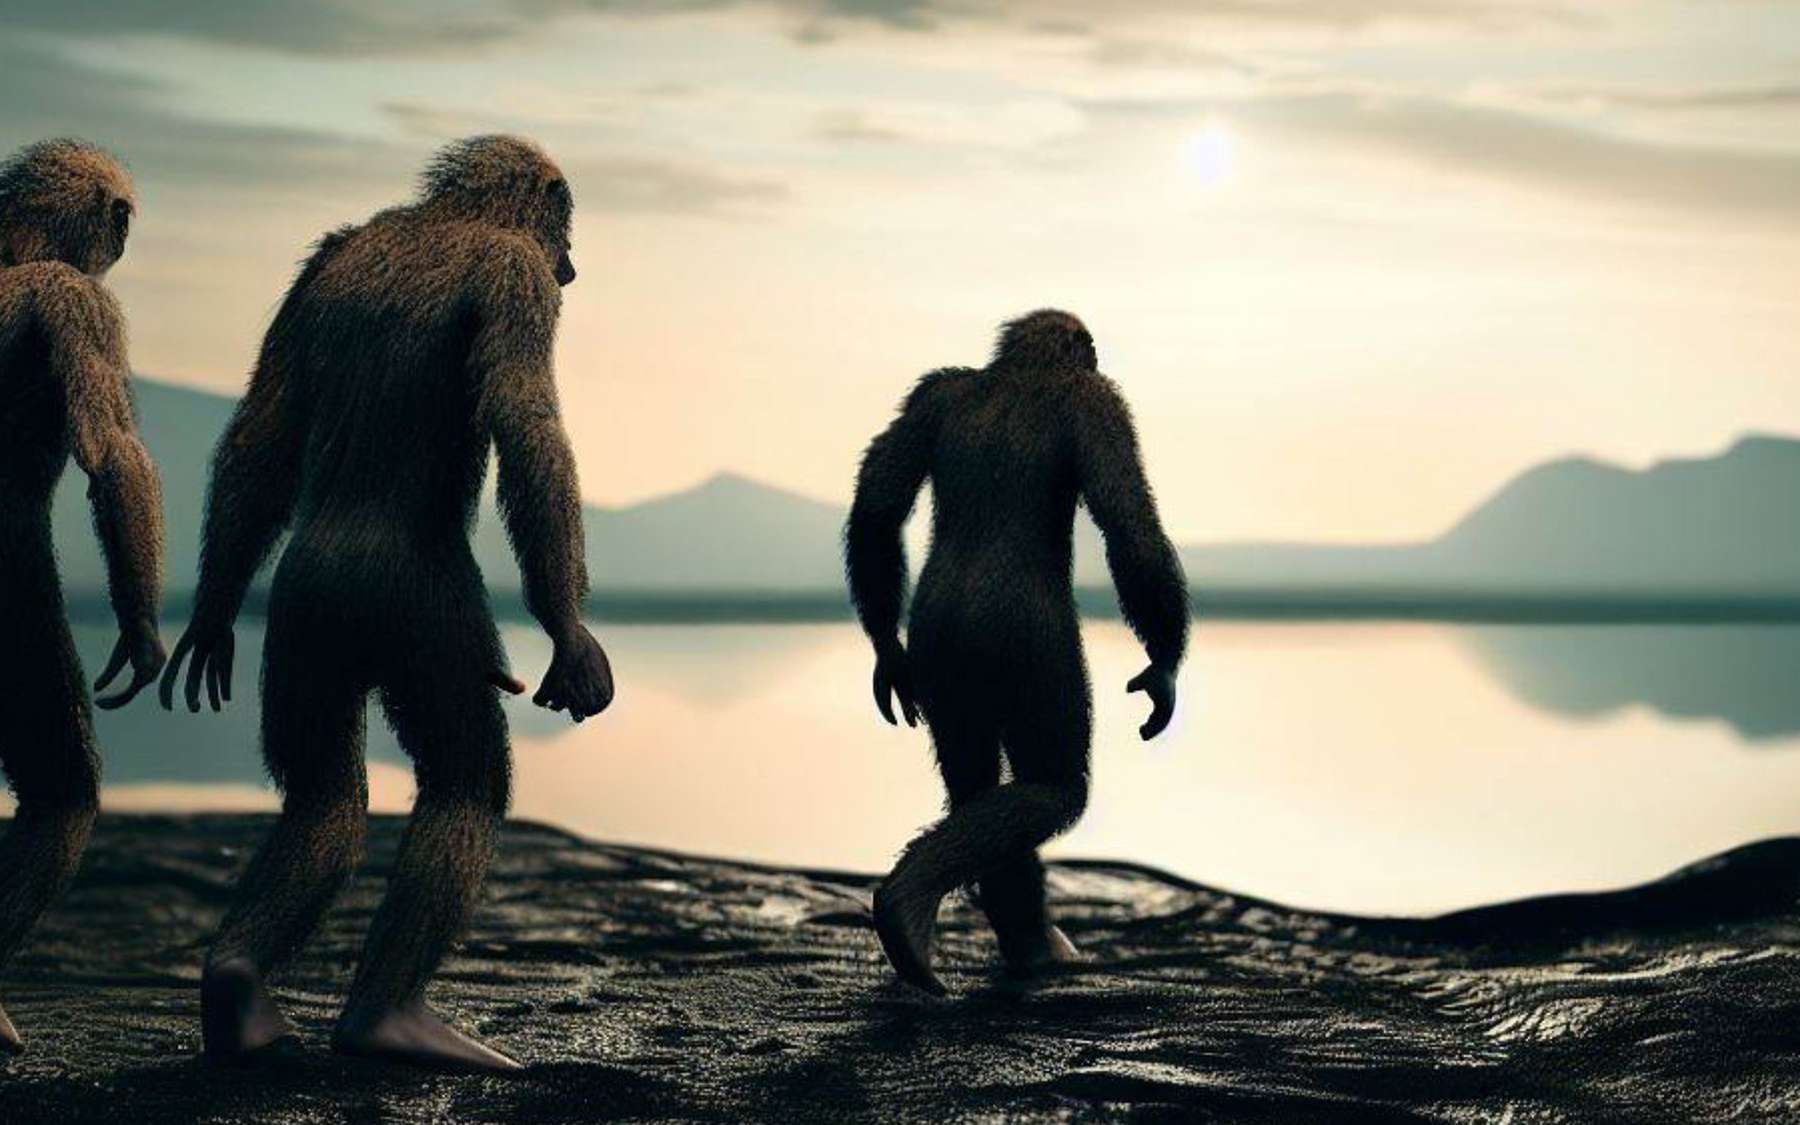 Une espèce humaine disparue a marché à cet endroit avec des mammifères géants il y a 300 000 ans en Allemagne